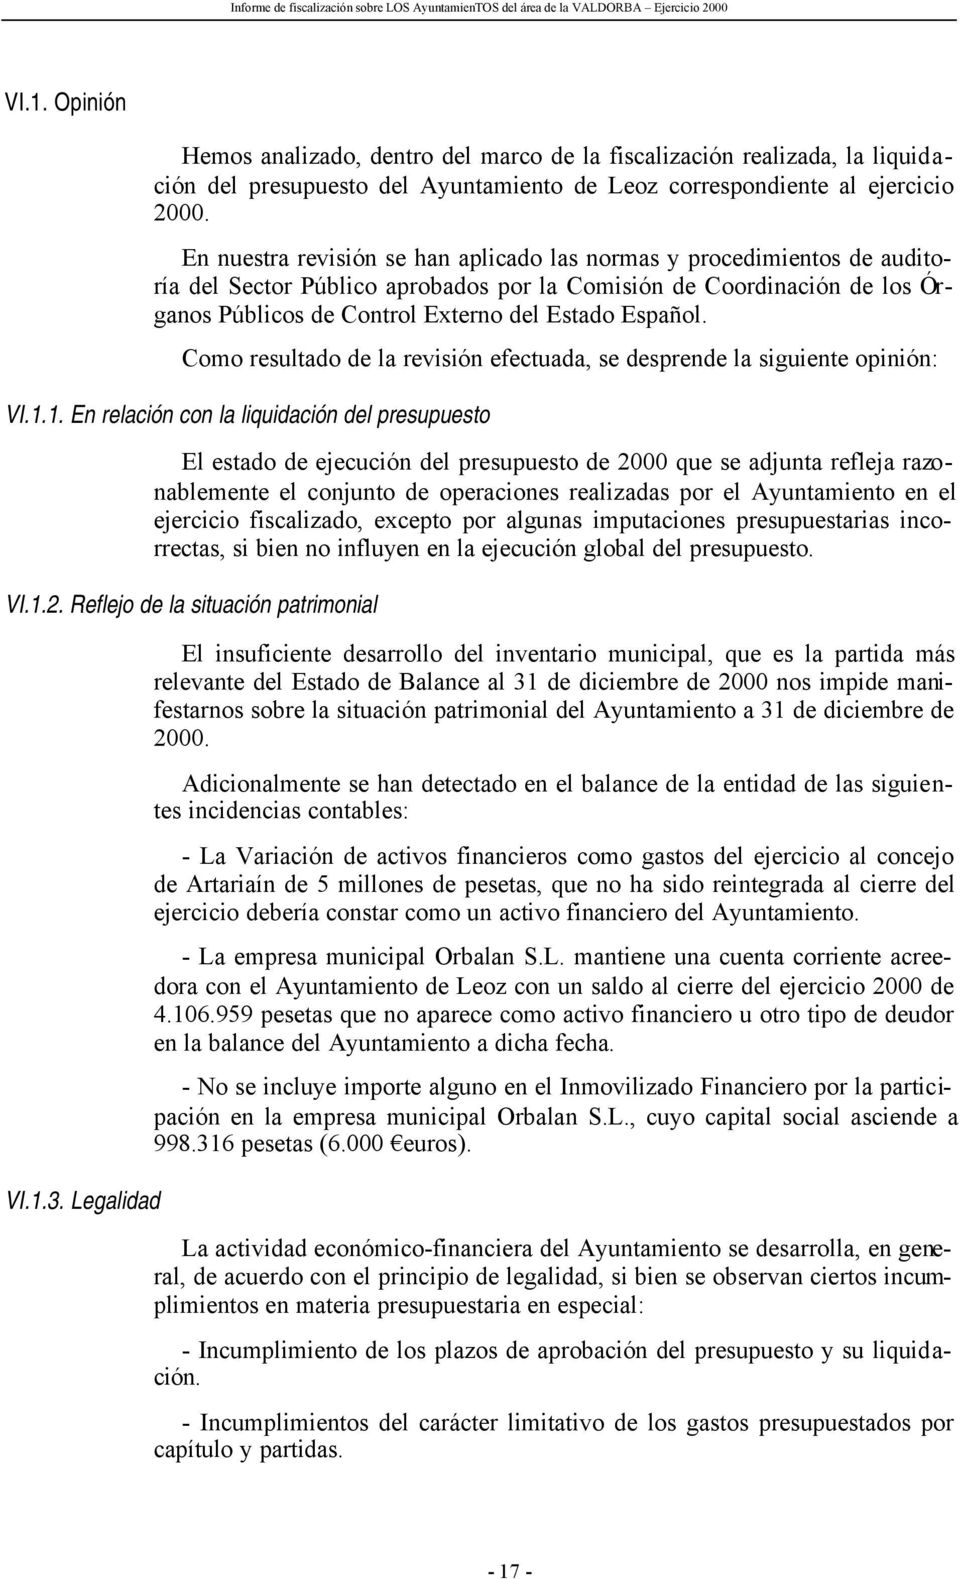 En nuestra revisión se han aplicado las normas y procedimientos de auditoría del Sector Público aprobados por la Comisión de Coordinación de los Órganos Públicos de Control Externo del Estado Español.